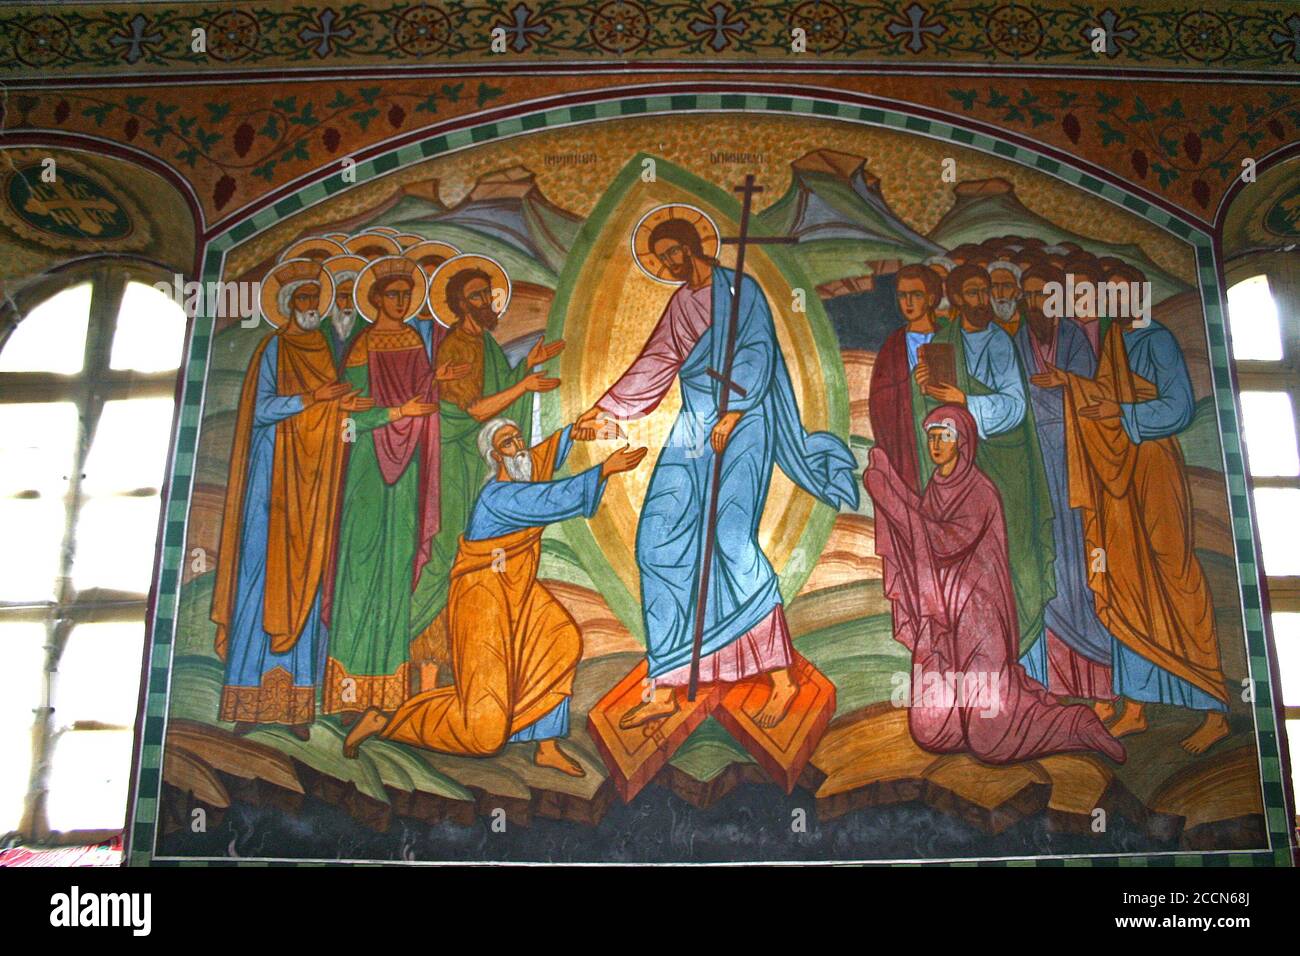 Jésus Christ apparaît aux gens après la Résurrection- fresque à l'intérieur de l'église orthodoxe de Pestera, dans le comté de Brasov, Roumanie. Banque D'Images